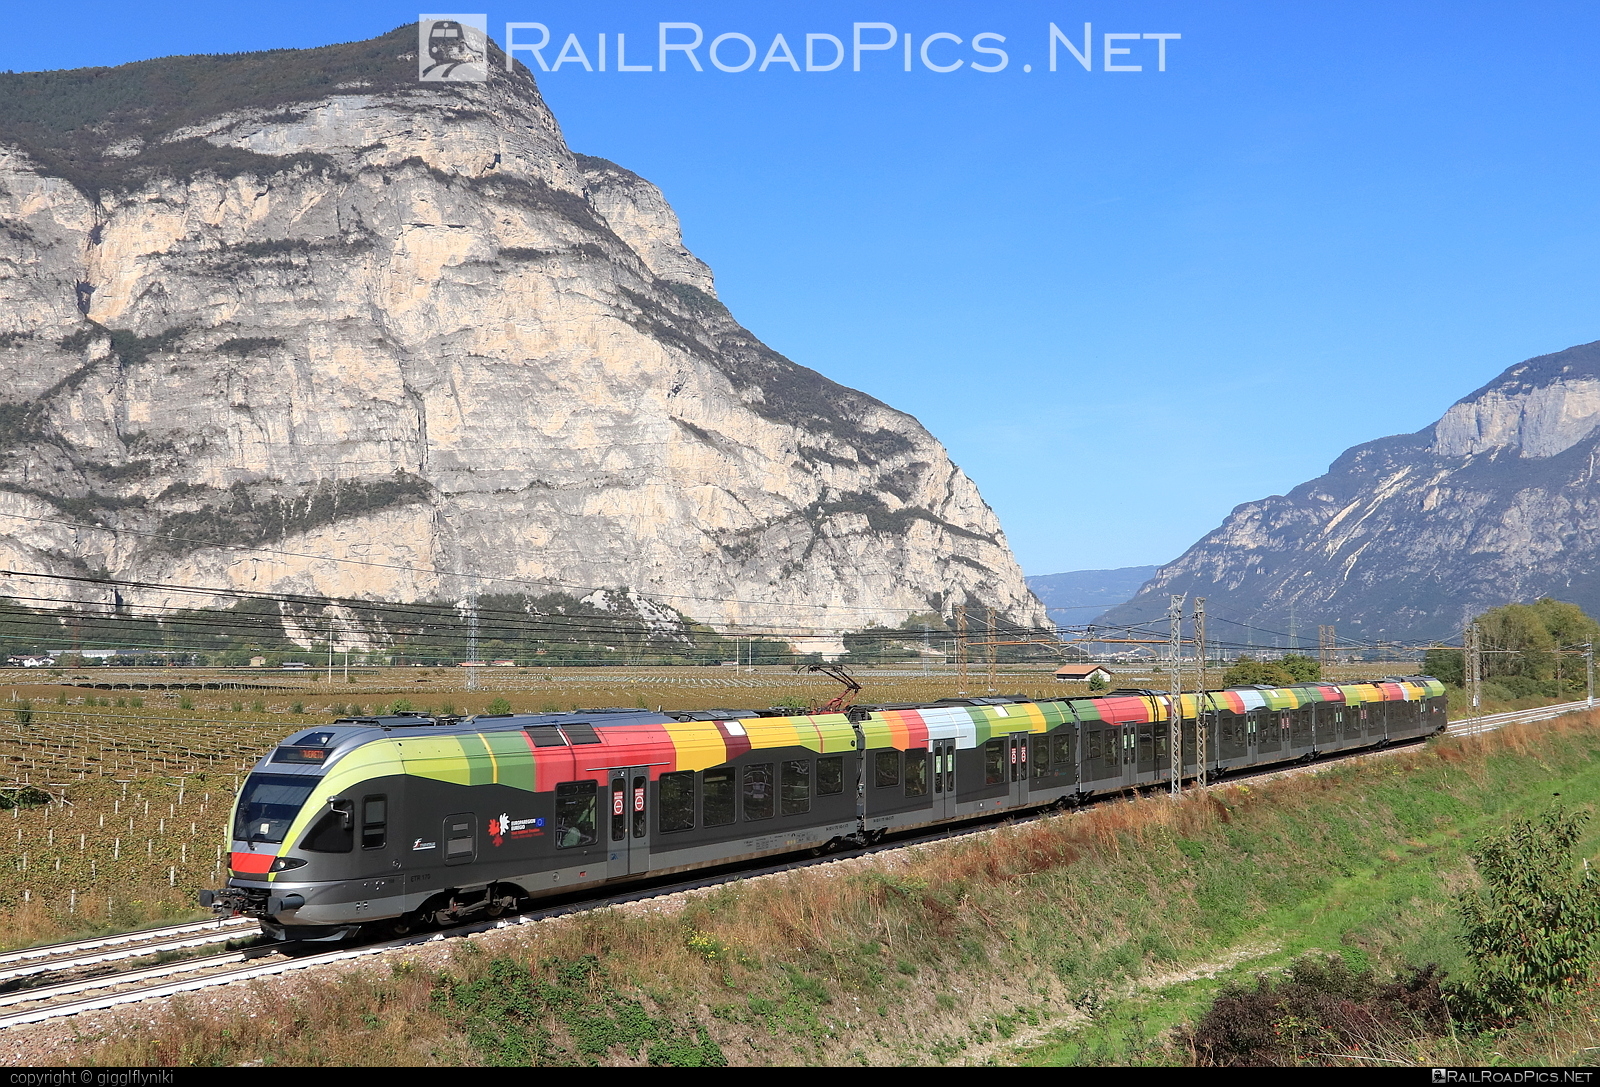 Stadler FLIRT - 170 143 operated by SAD S.p.A. #ferroviedellostato #fs #fsitaliane #sad #stadler #stadlerFlirt #stadlerrail #stadlerrailag #trenitalia #trenitaliaspa